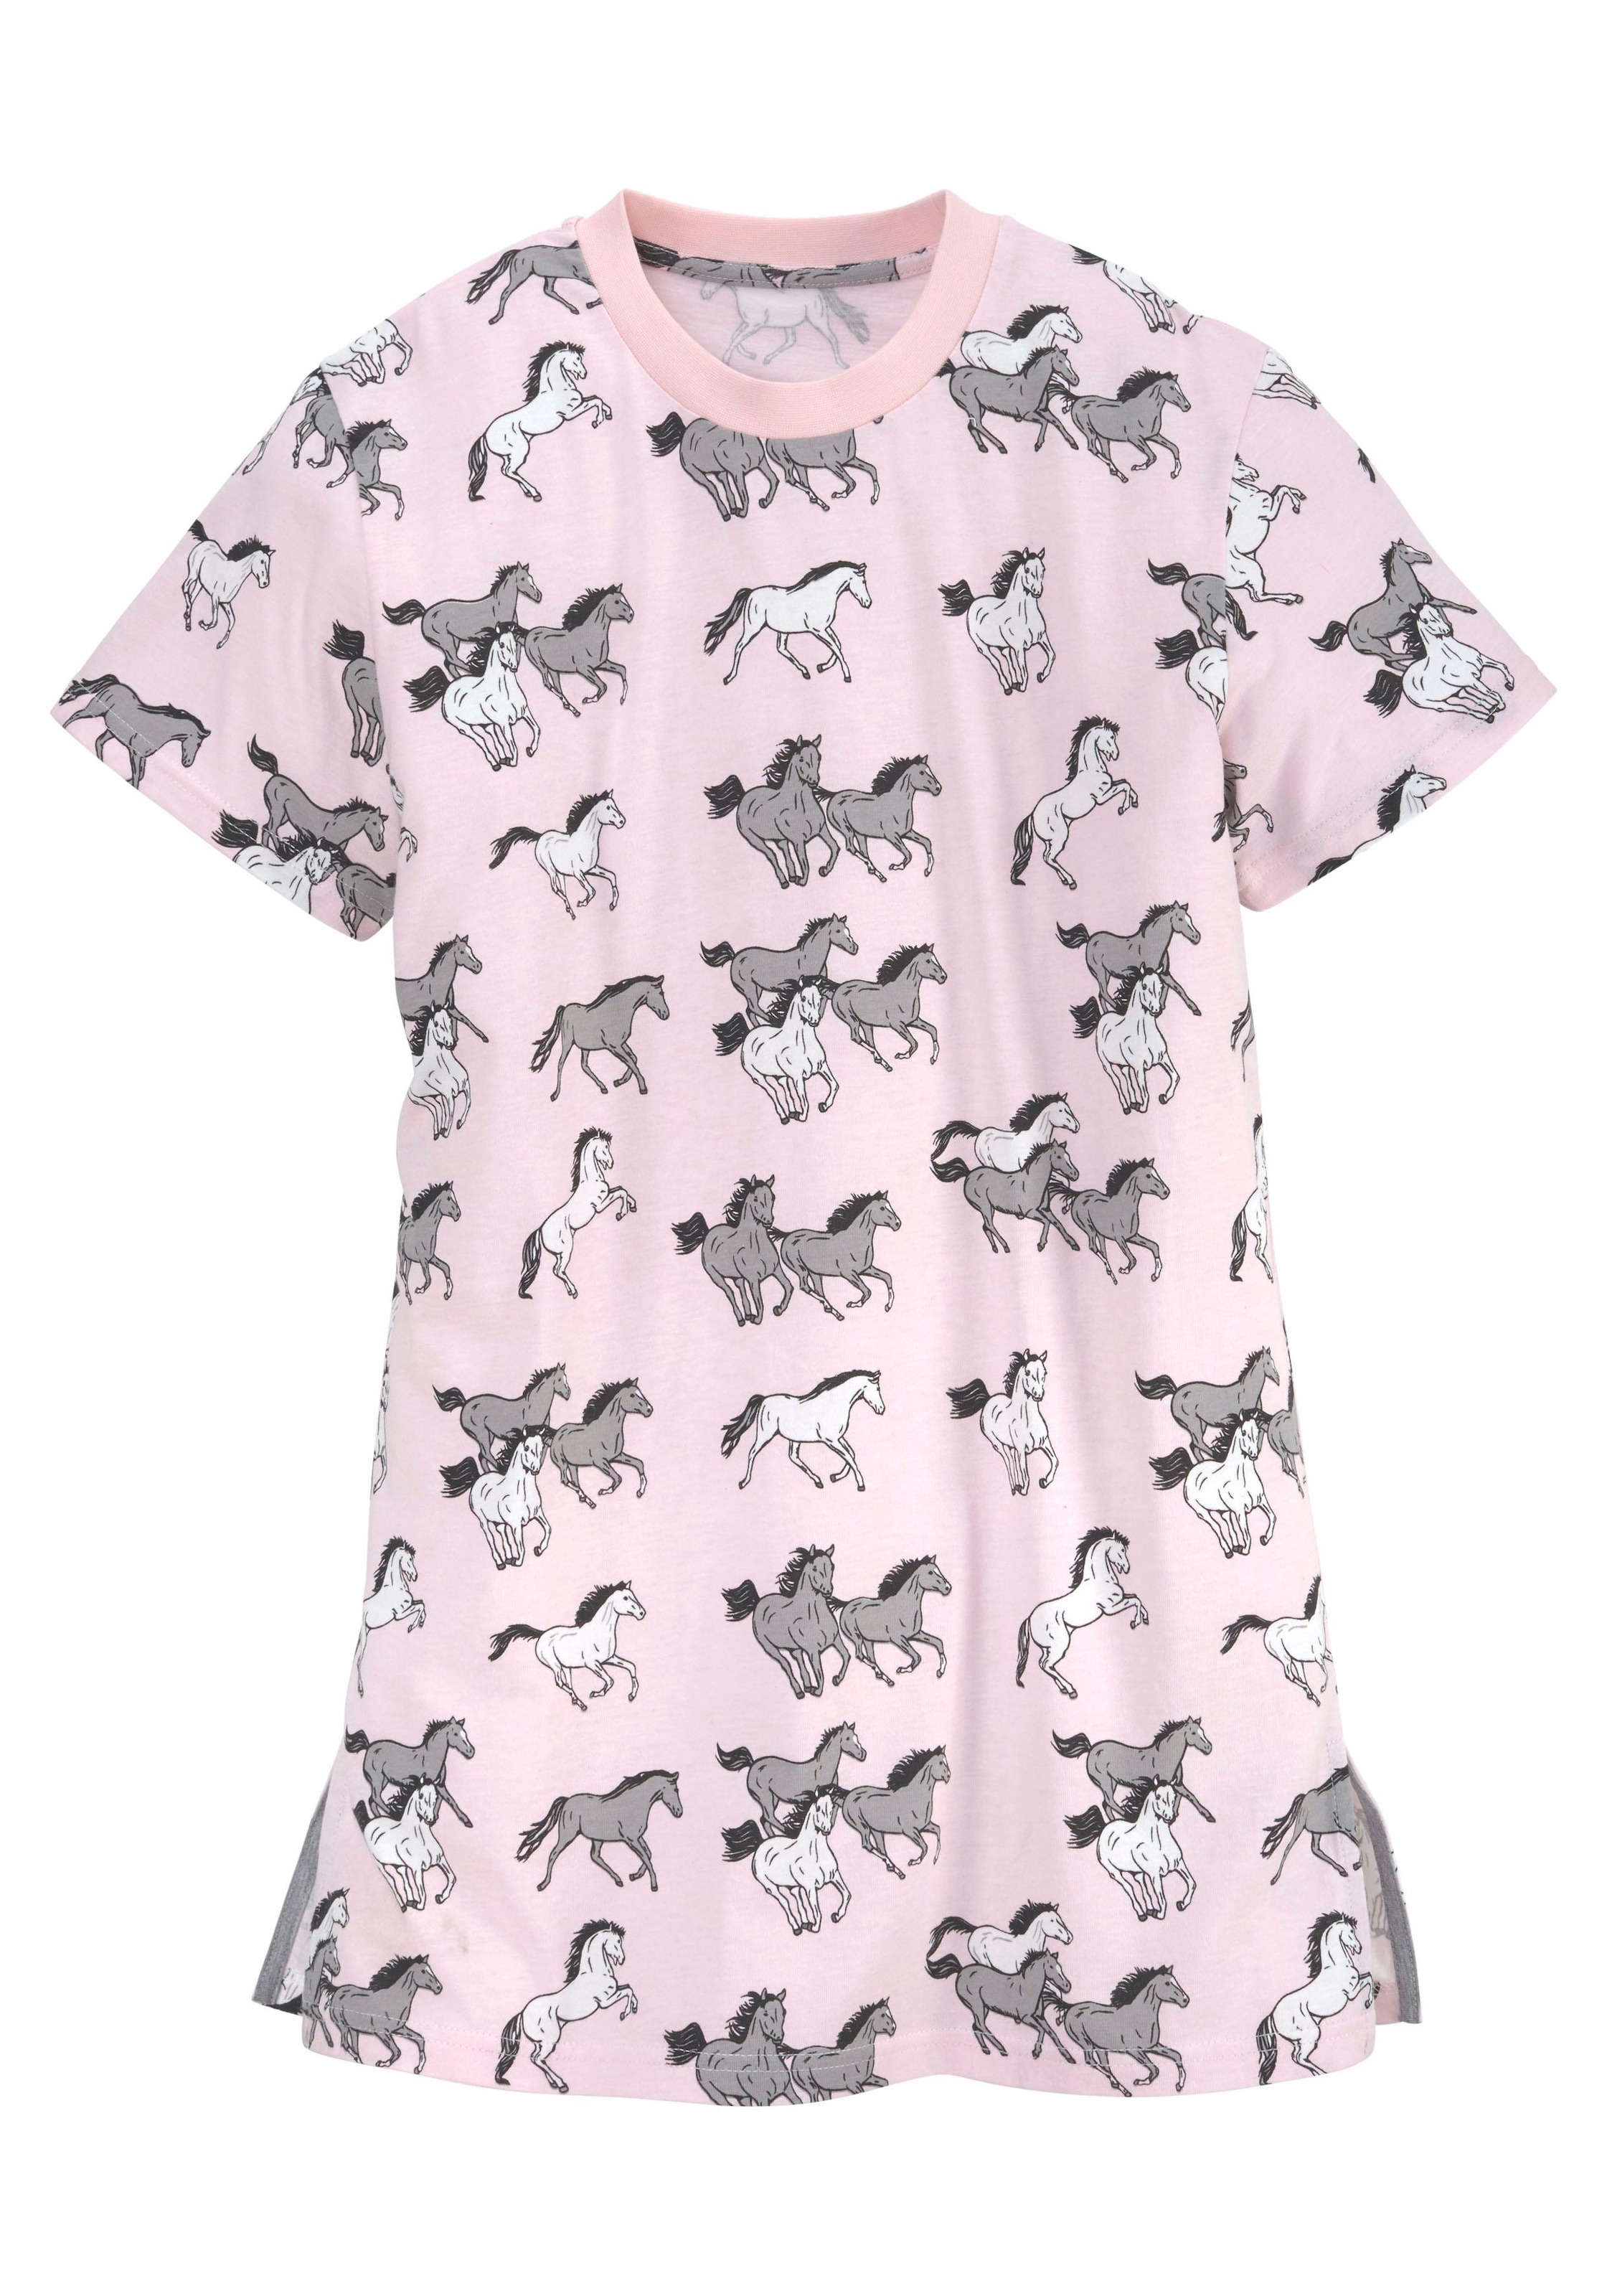 Trendige petite fleur Nachthemd, mit Mindestbestellwert kaufen ohne Pferde-Druck Allover